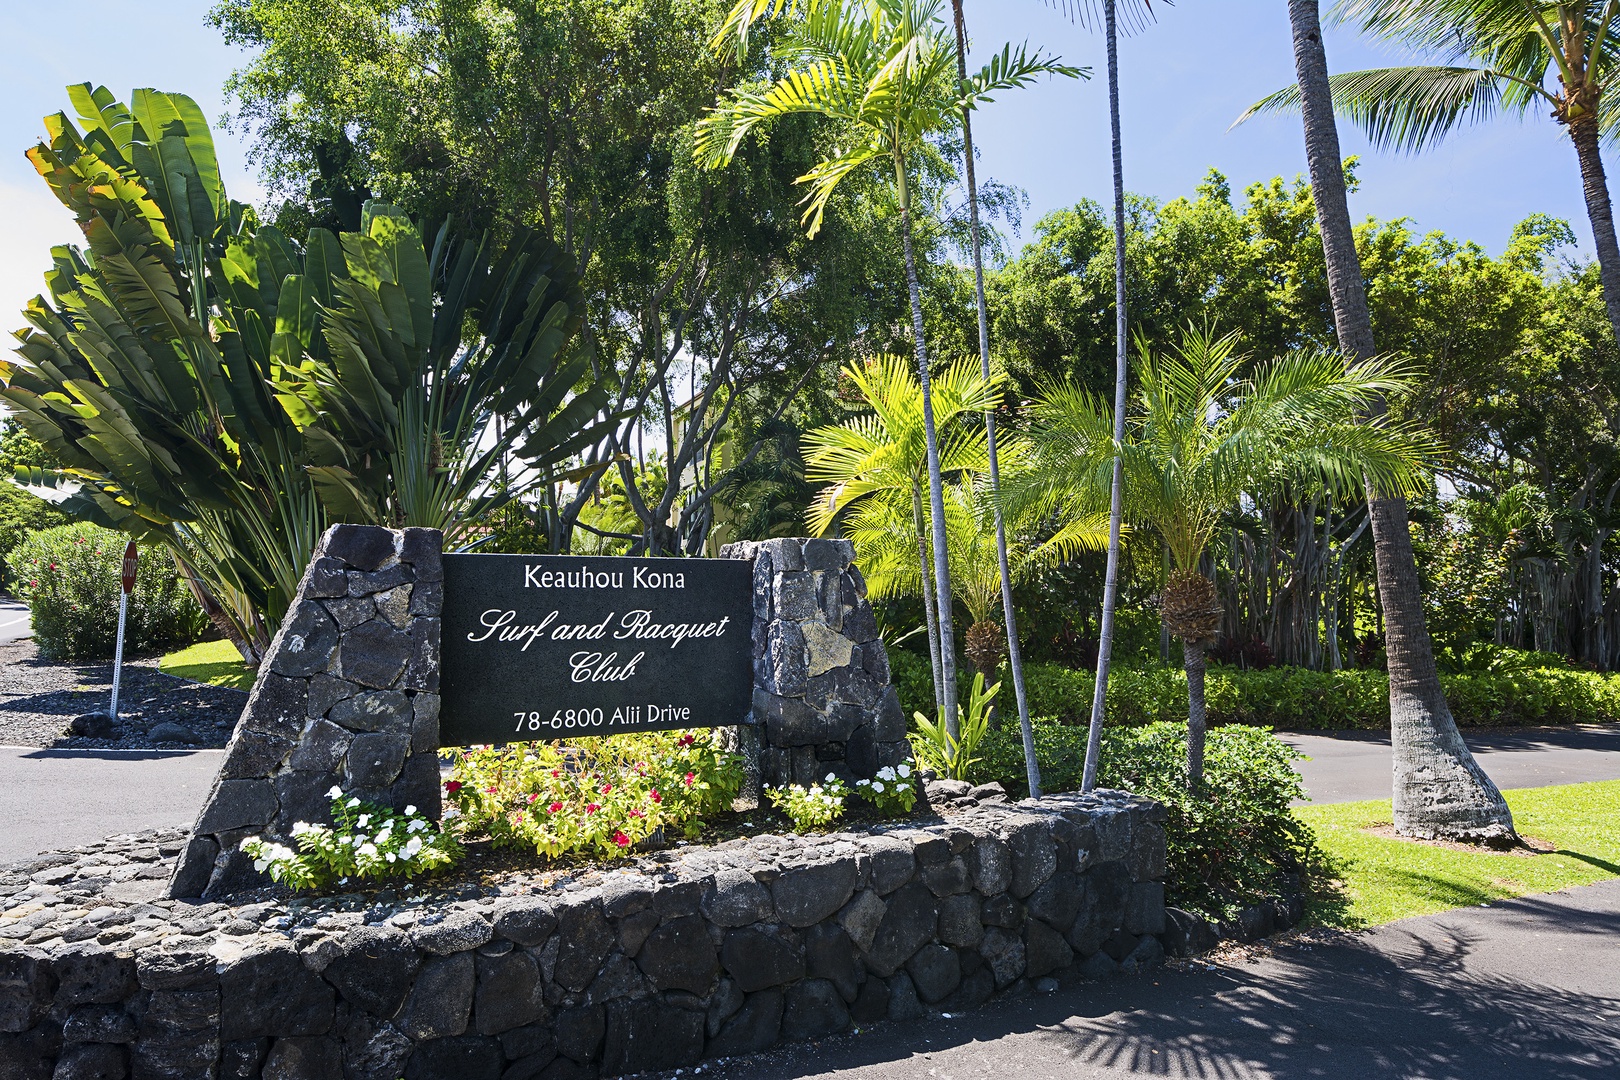 Kailua Kona Vacation Rentals, Keauhou Kona Surf & Racquet #48 - Keauhou Kona Surf & Racquet Gated Entrance